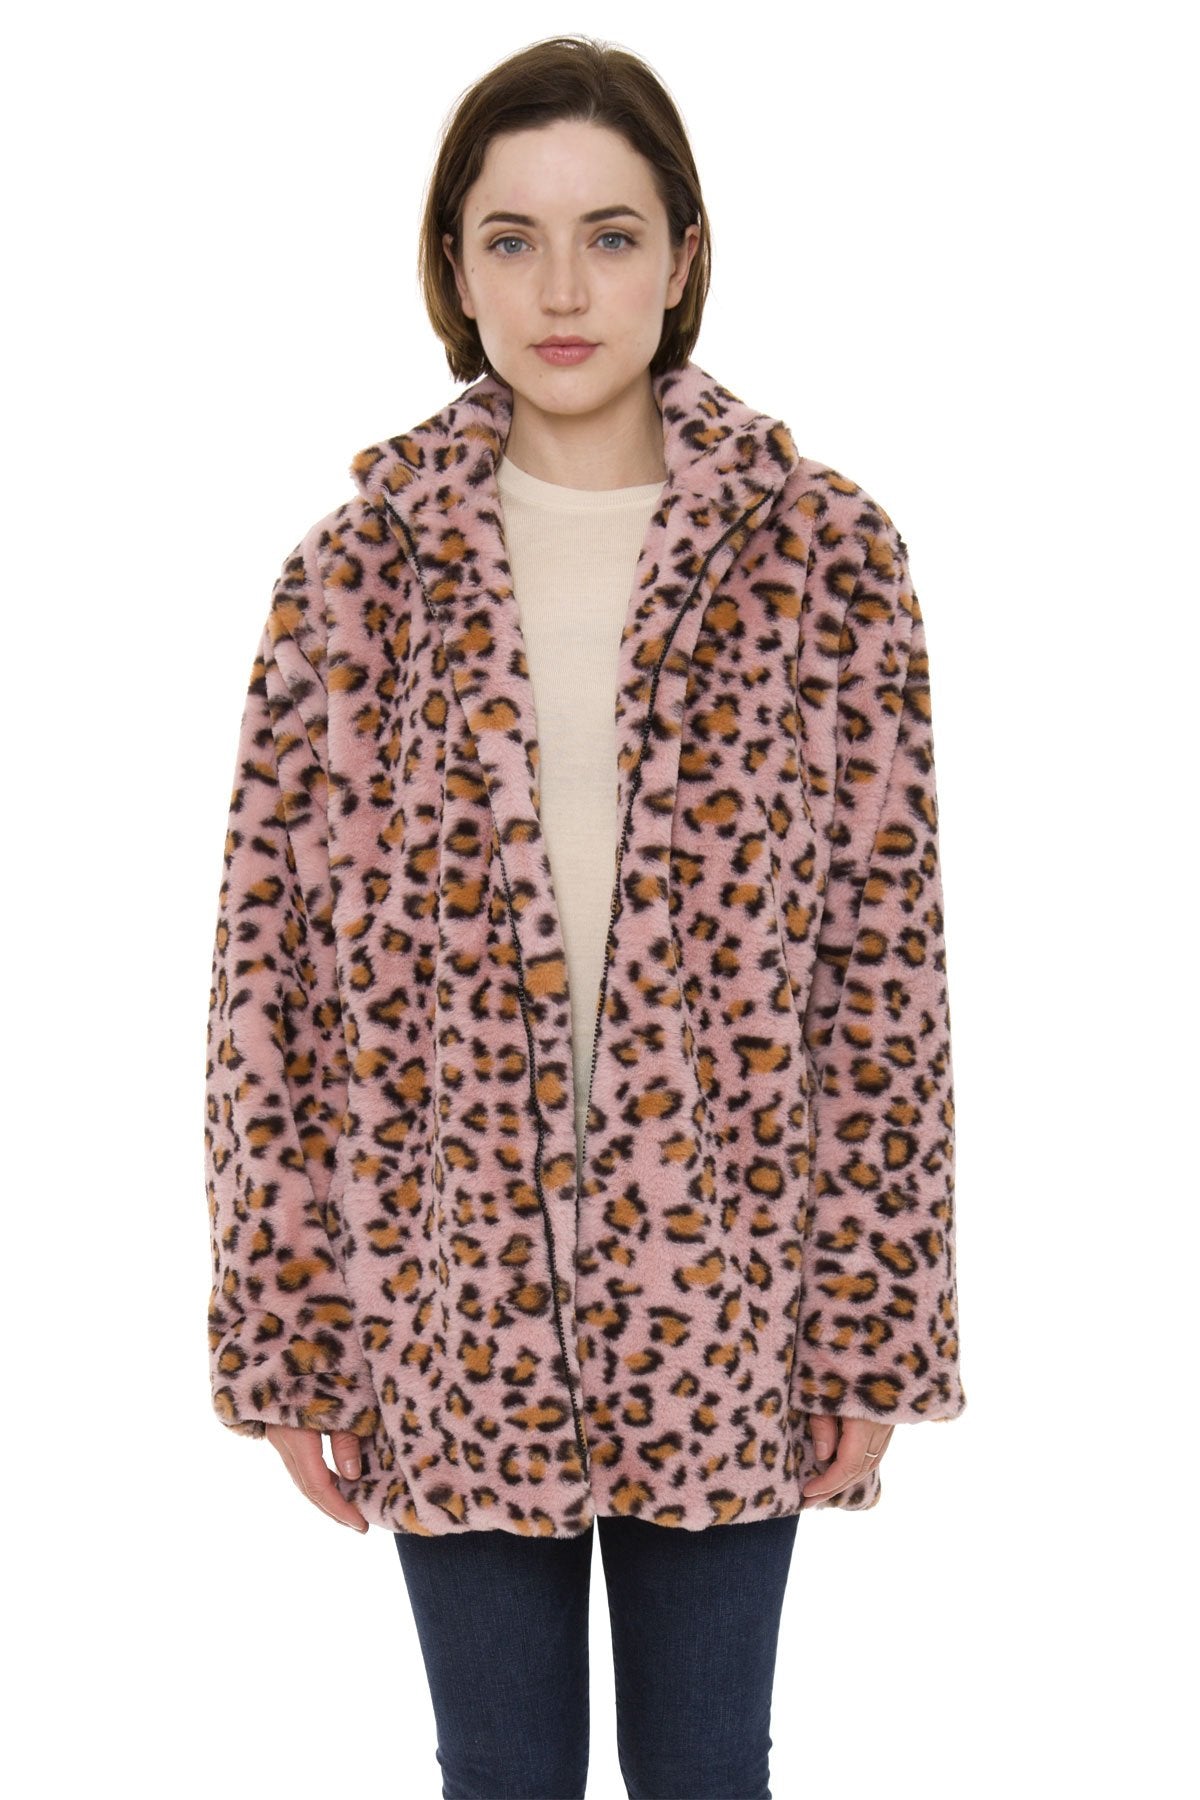 Leopard Print Coat W/ Pockets & Zipper Closure 